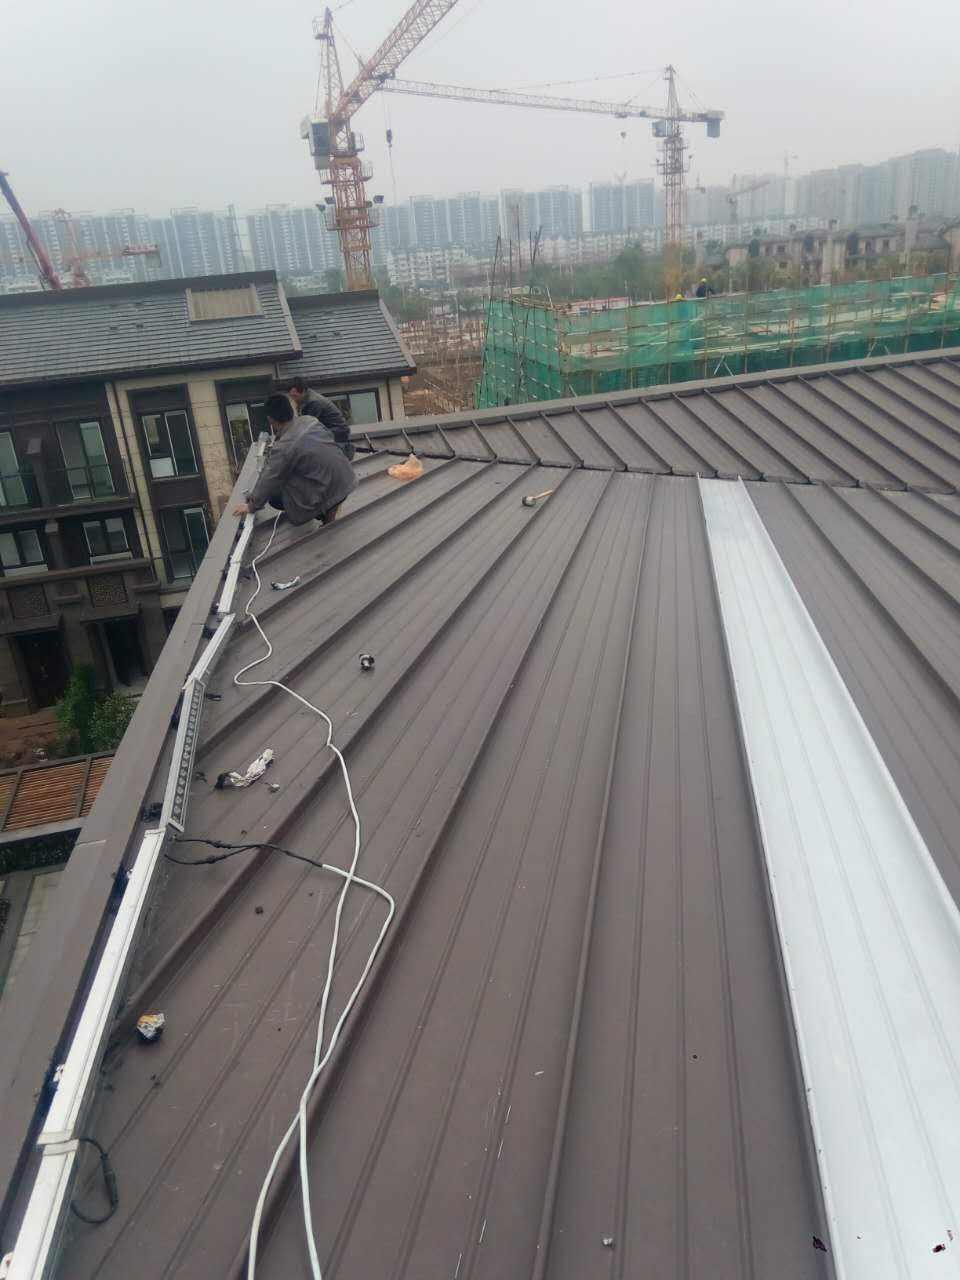 新疆厂家直销 铝镁锰直立锁边暗扣瓦铝镁锰合金耐腐蚀屋面板